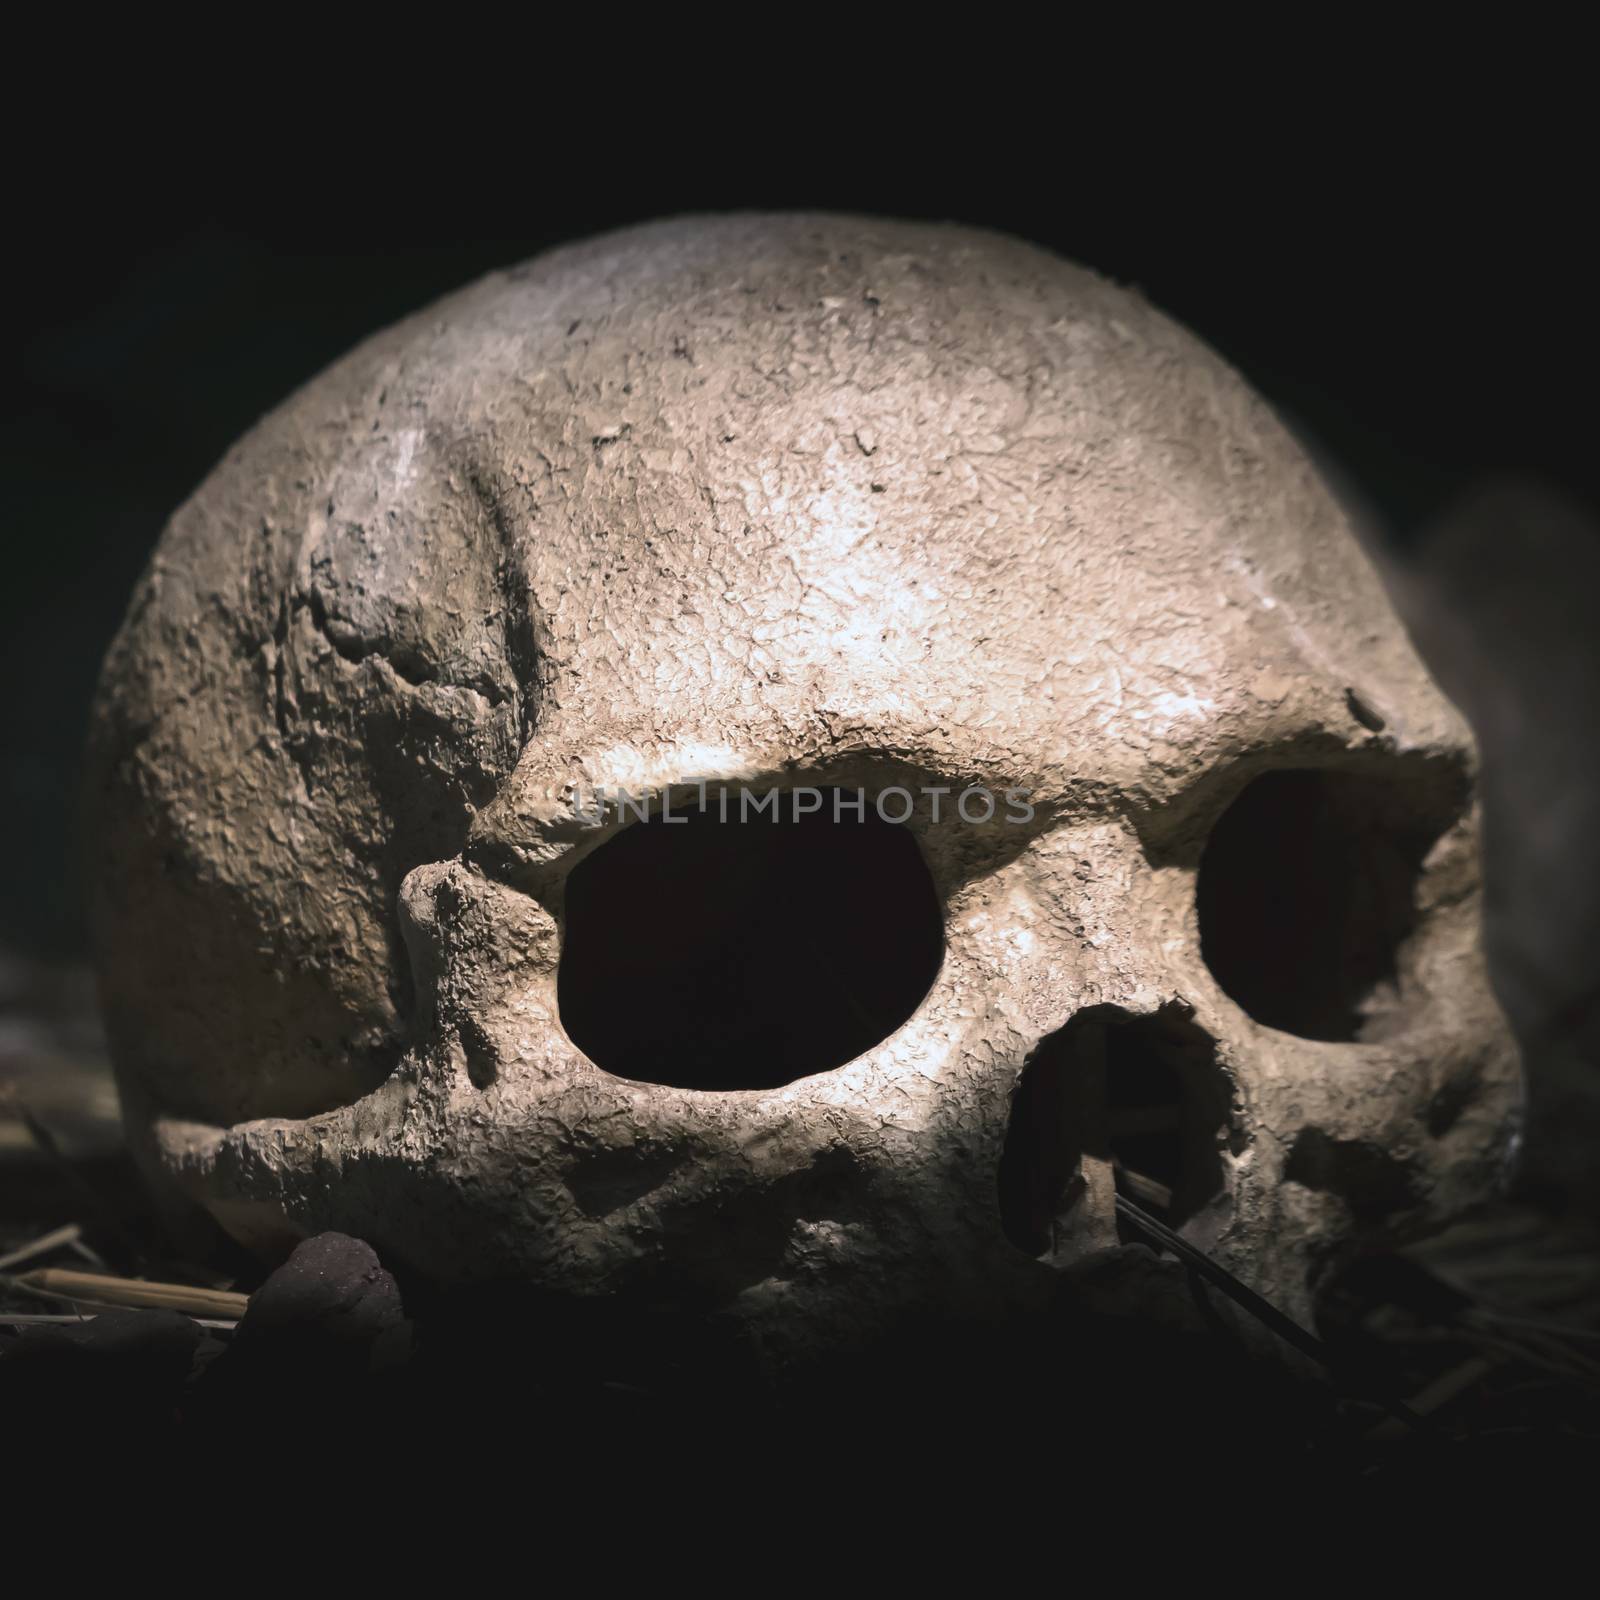 Old skull. Real human skull on dark background. Vintage black background.